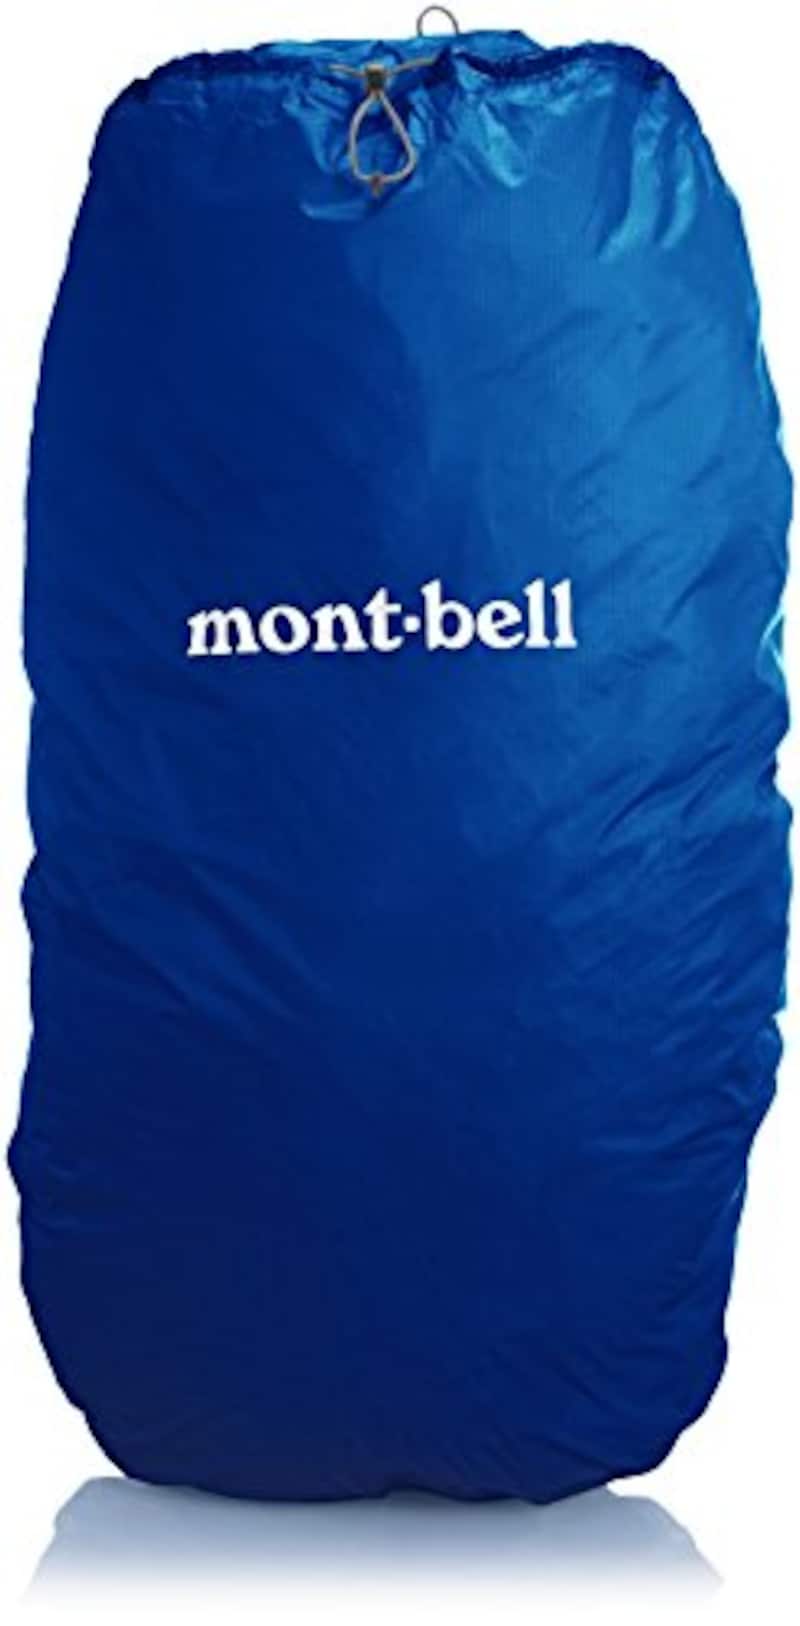 mont-bell（モンベル）,ジャストフィットパックカバー,1128521